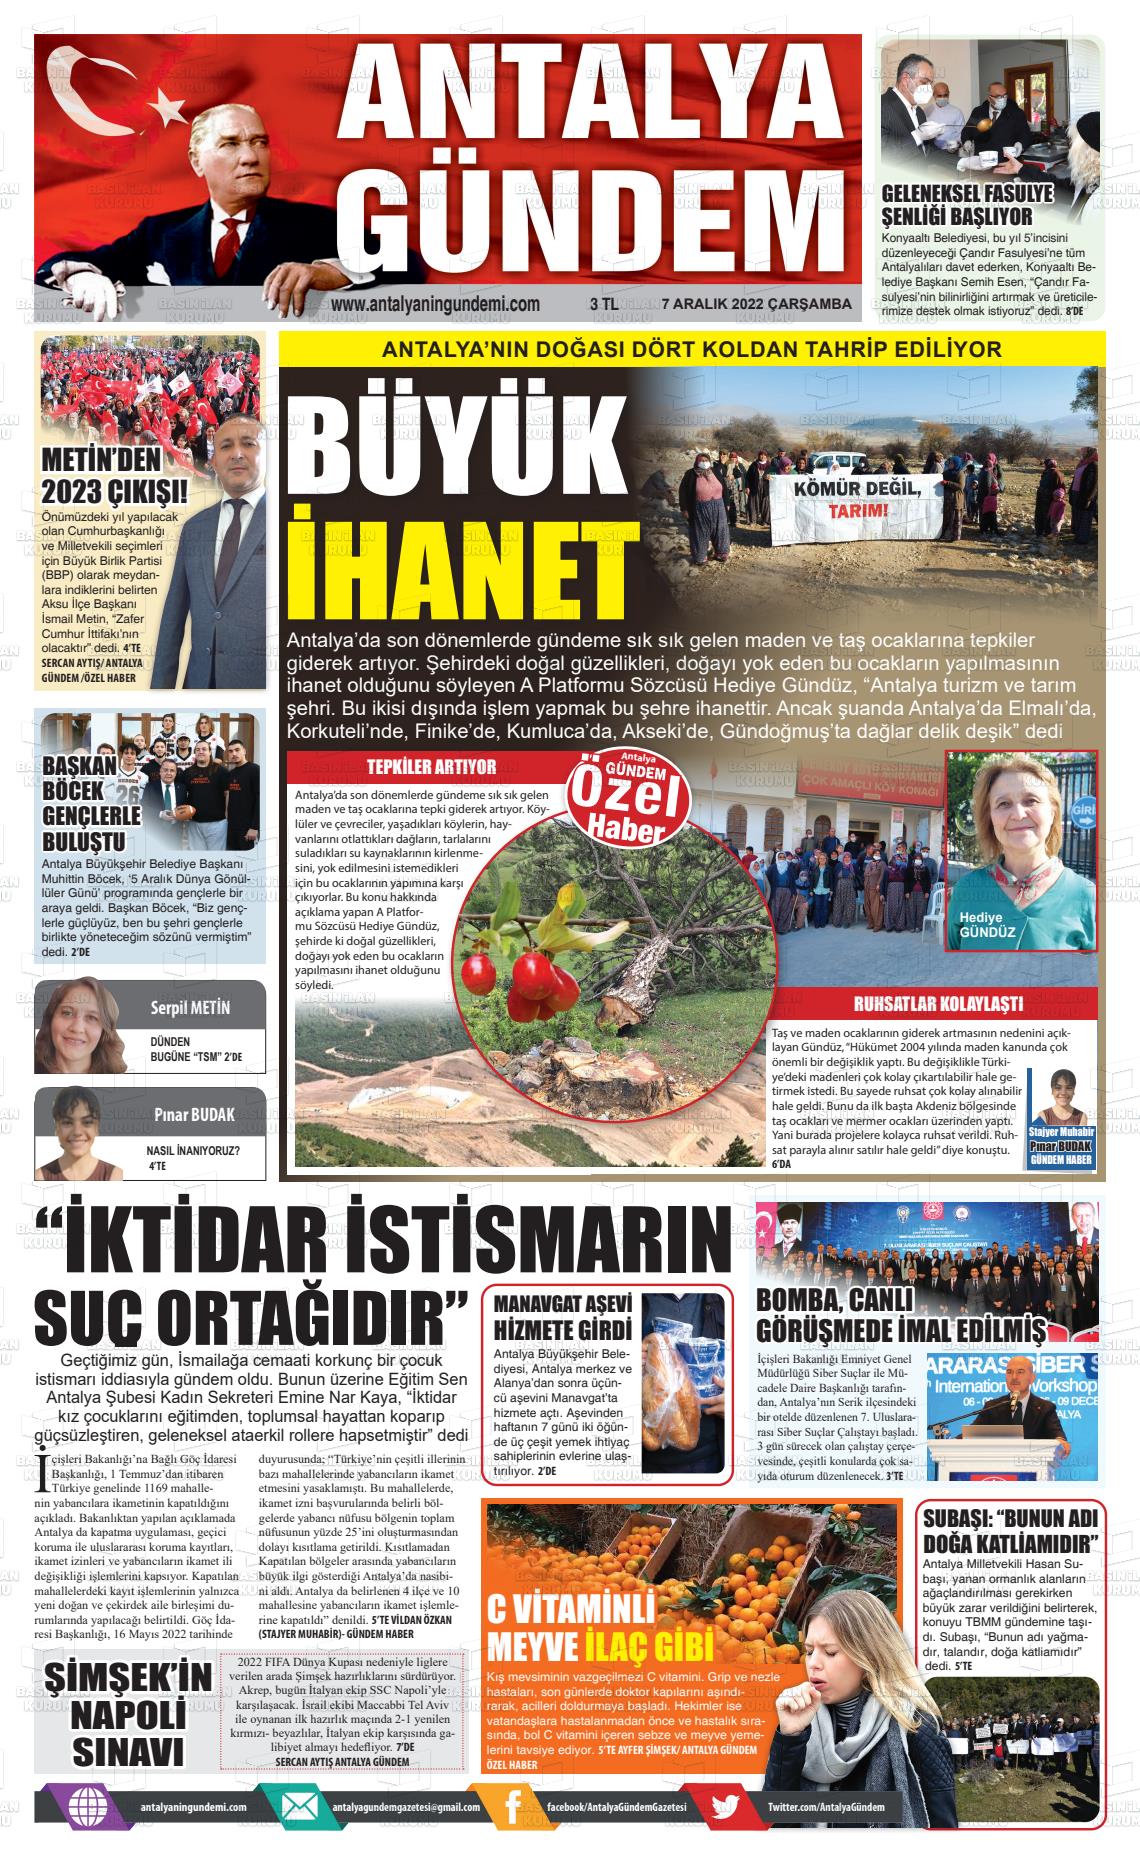 07 Aralık 2022 Antalya'nın Gündemi Gazete Manşeti